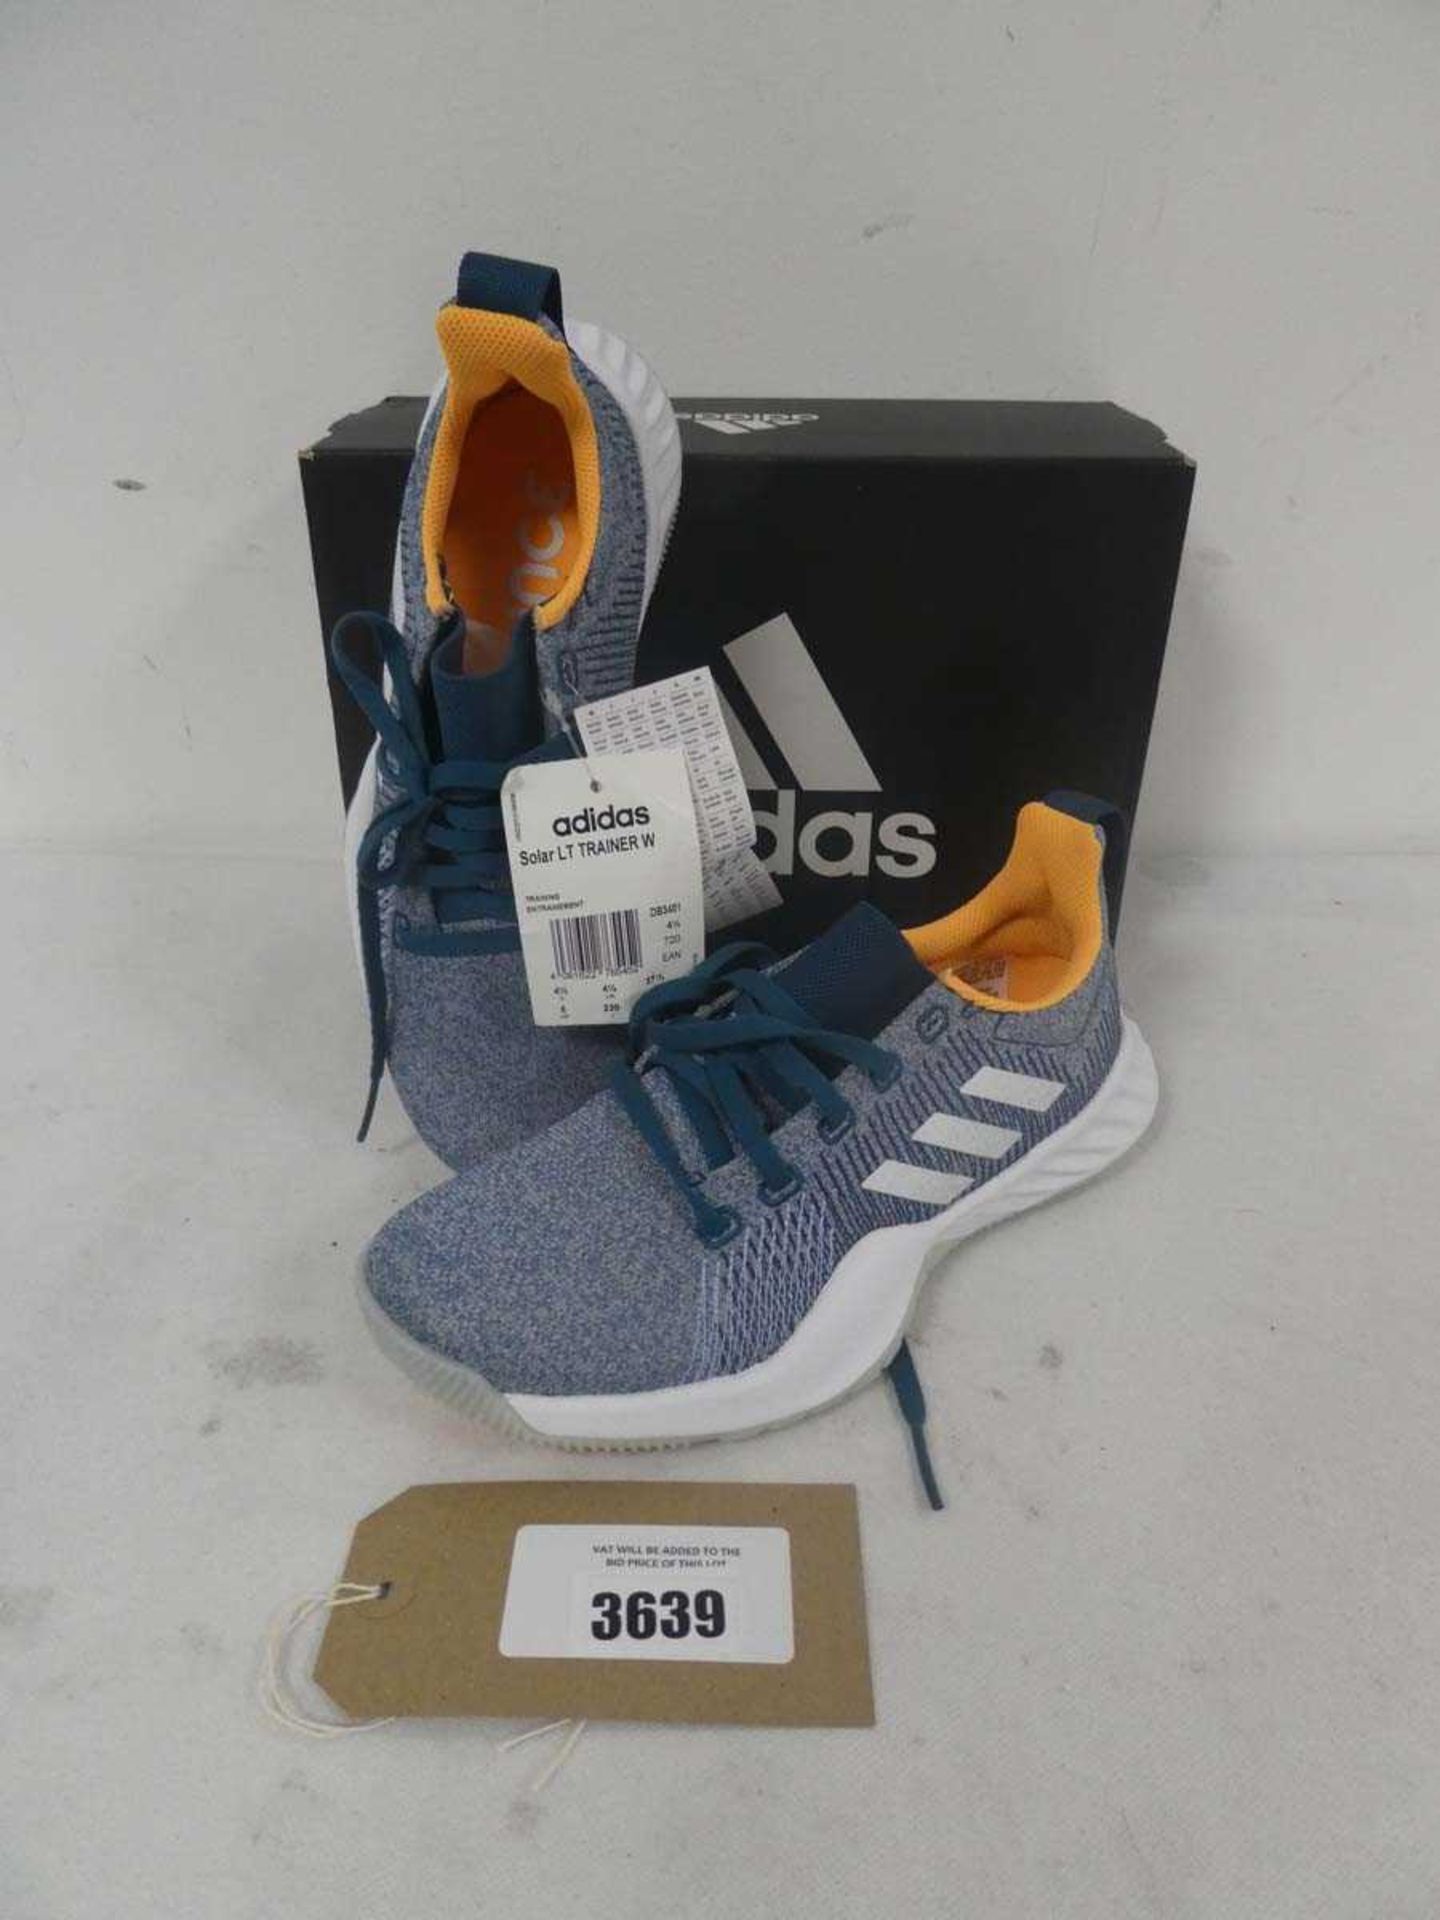 +VAT Boxed pair of Adidas ladies solar LT trainer in blue size UK 4.5